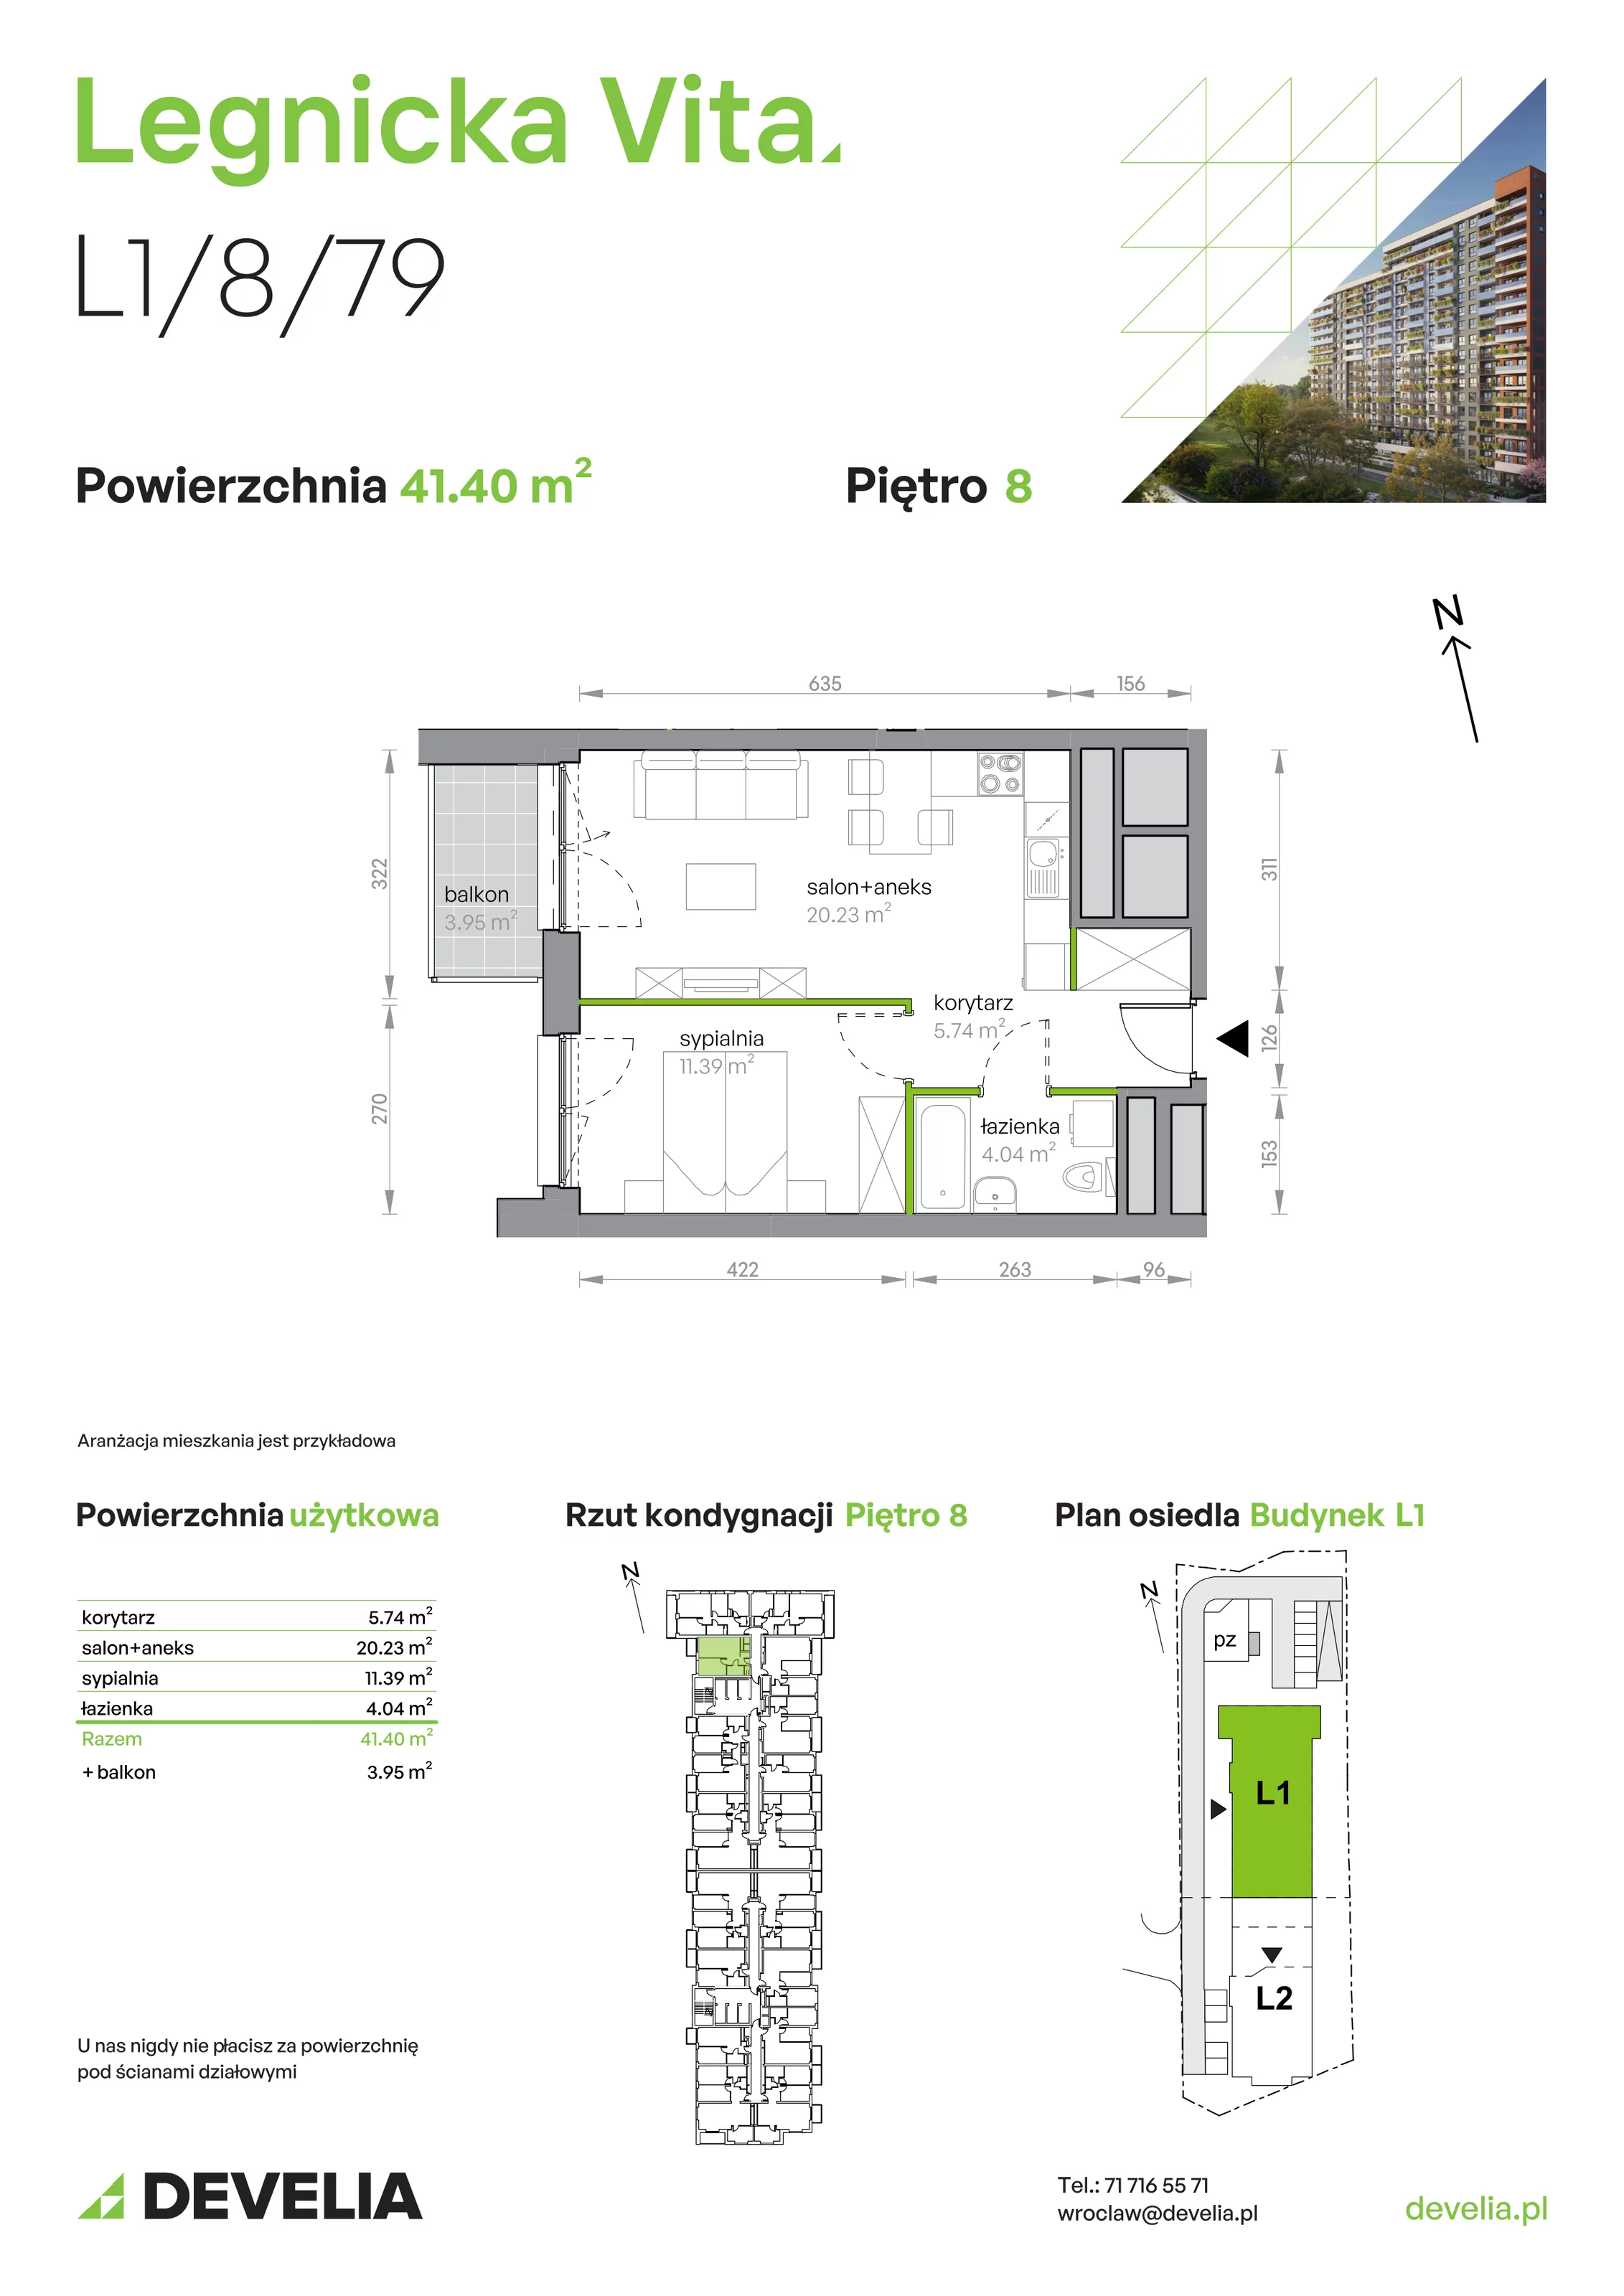 Mieszkanie 41,40 m², piętro 8, oferta nr L1/8/79, Legnicka Vita, Wrocław, Gądów-Popowice Południowe, Popowice, ul. Legnicka 52 A